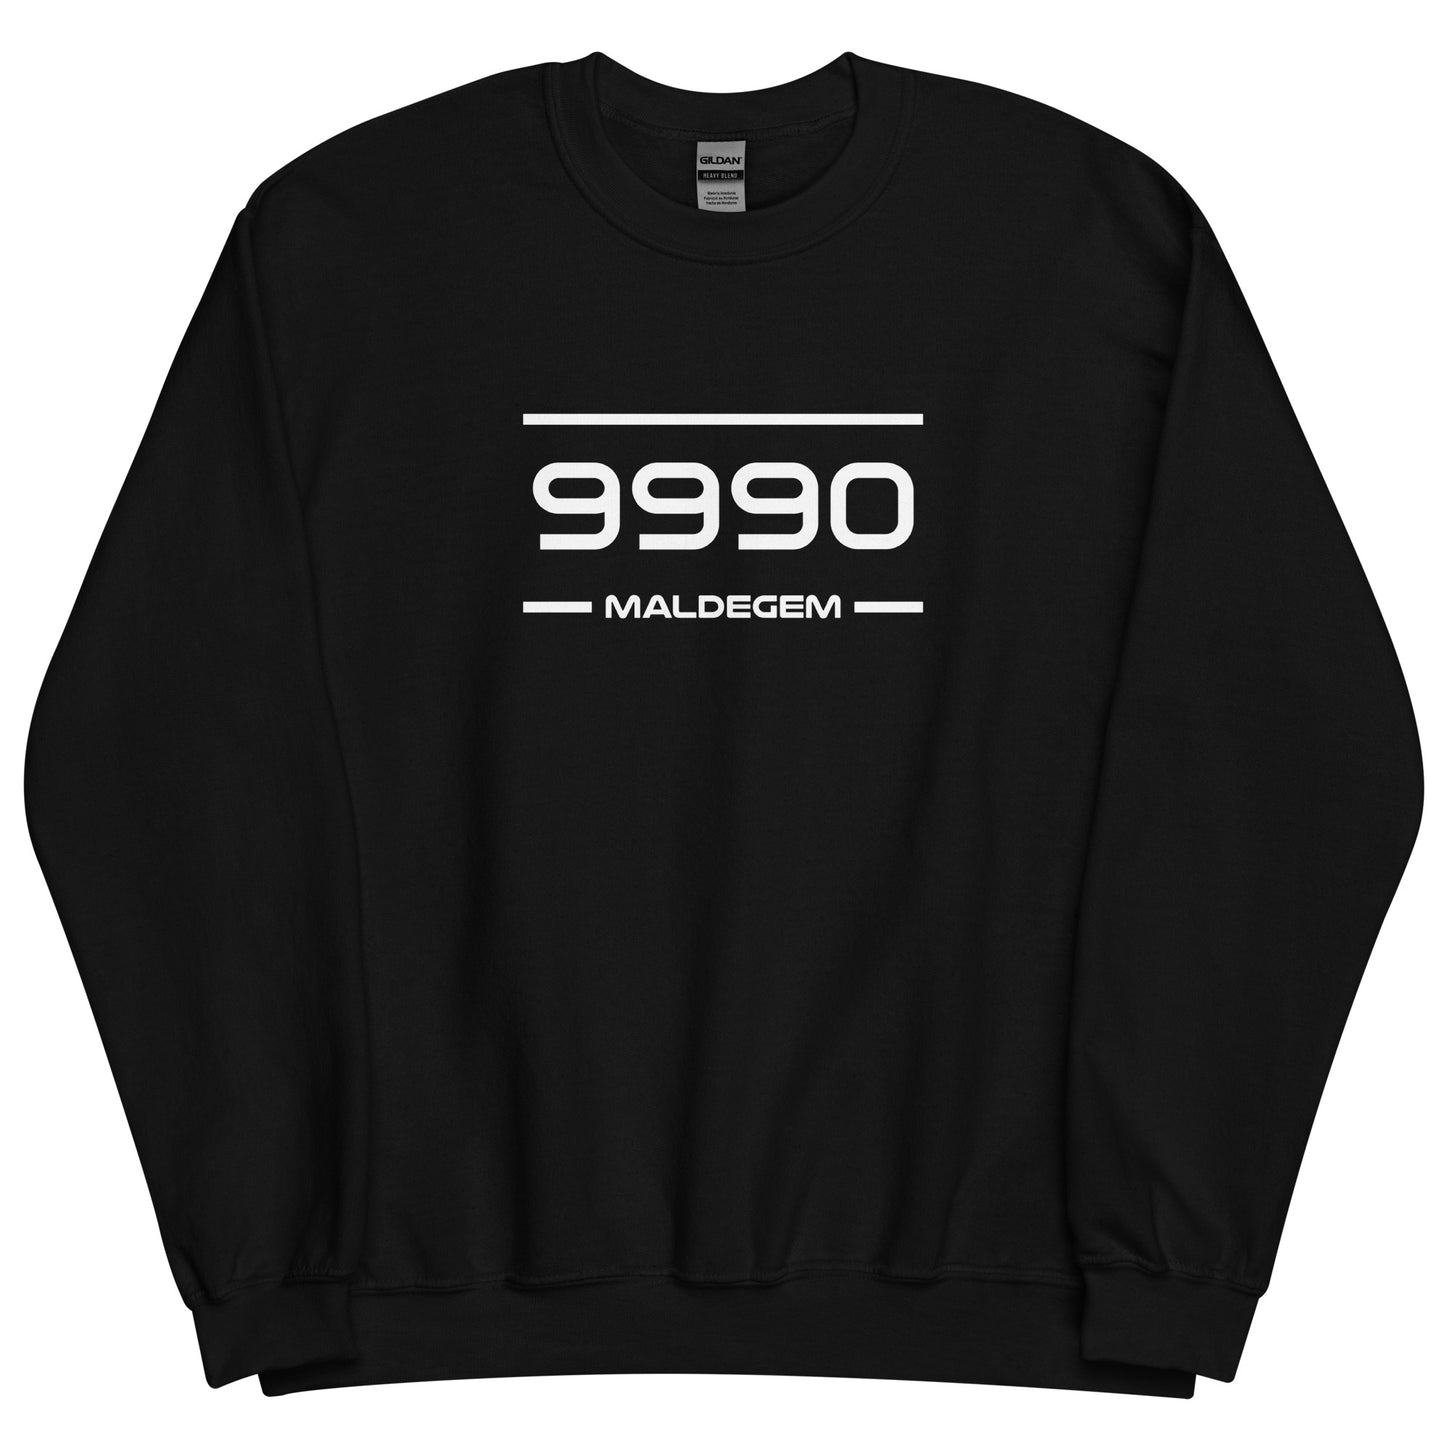 Sweater - 9990 - Maldegem (M/V)